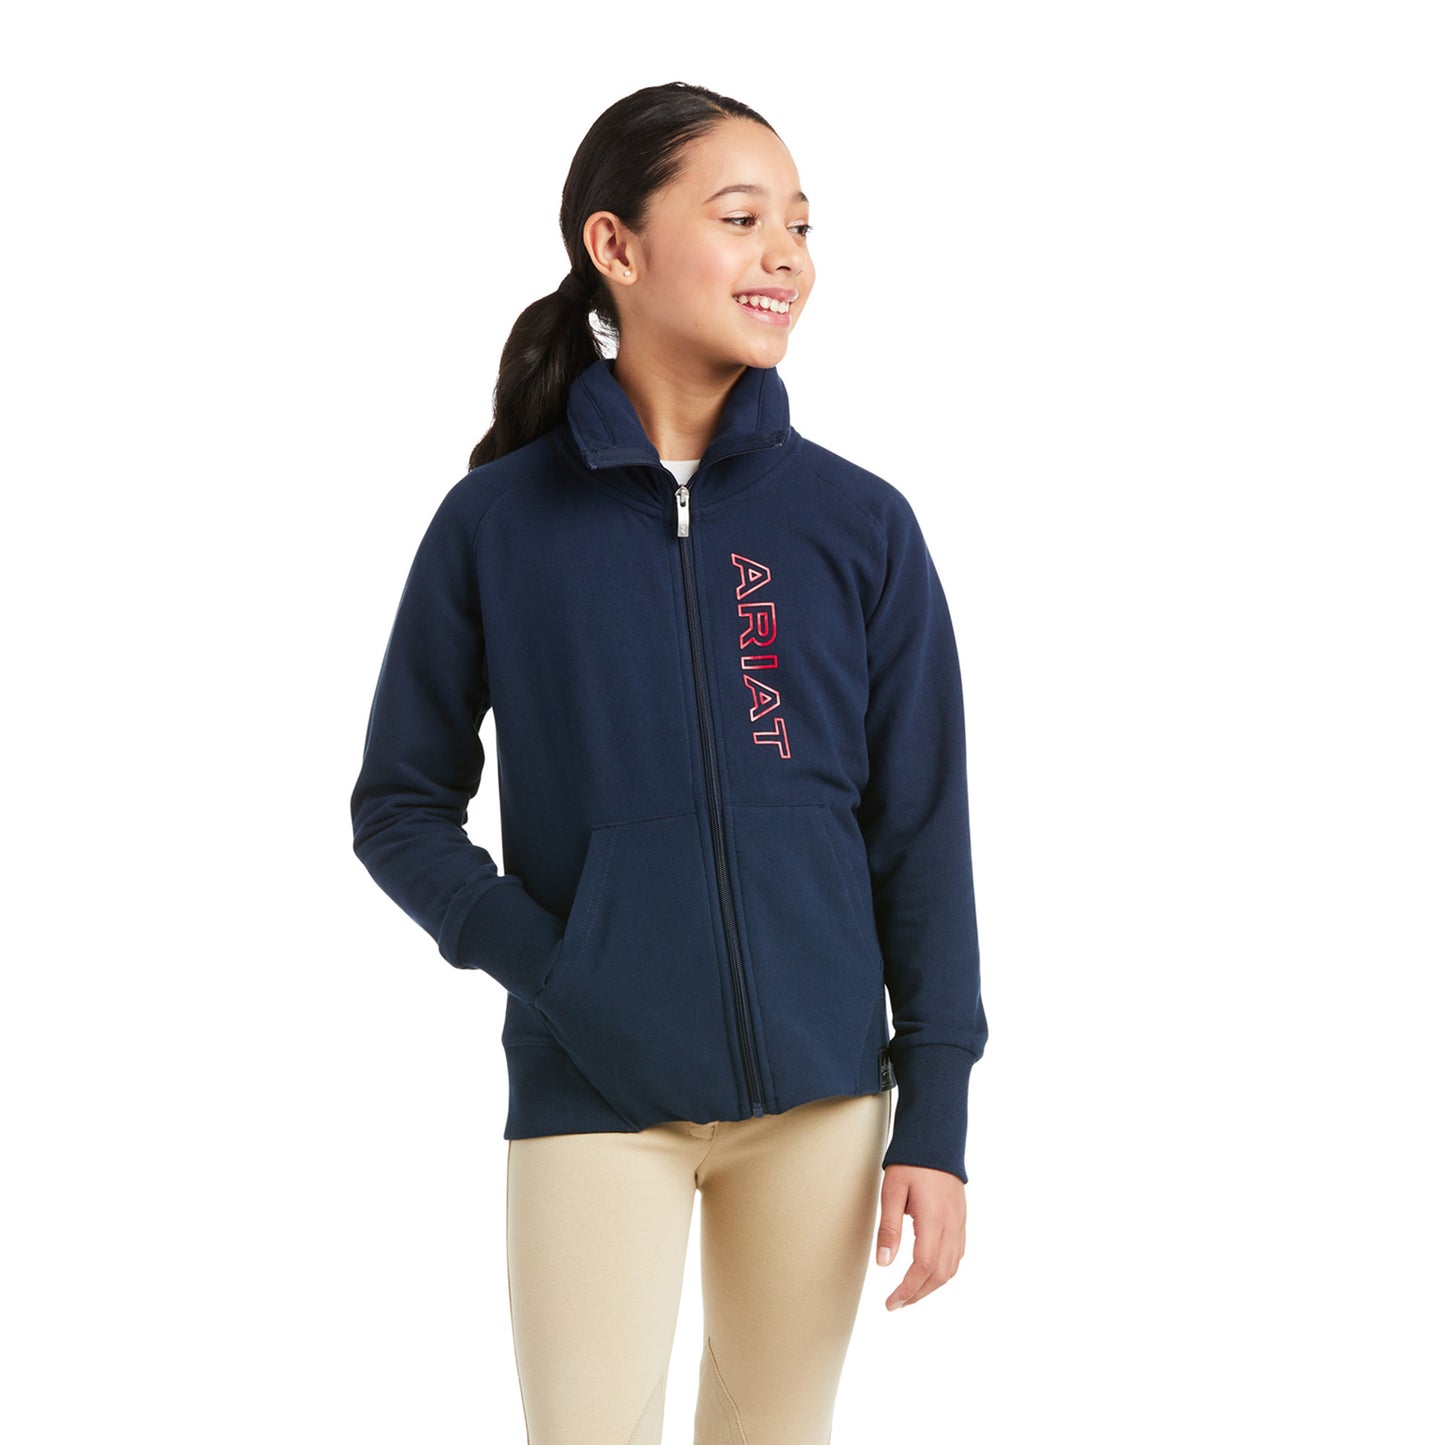 Ariat® Children's Team Logo Navy Sweatshirt 10037723